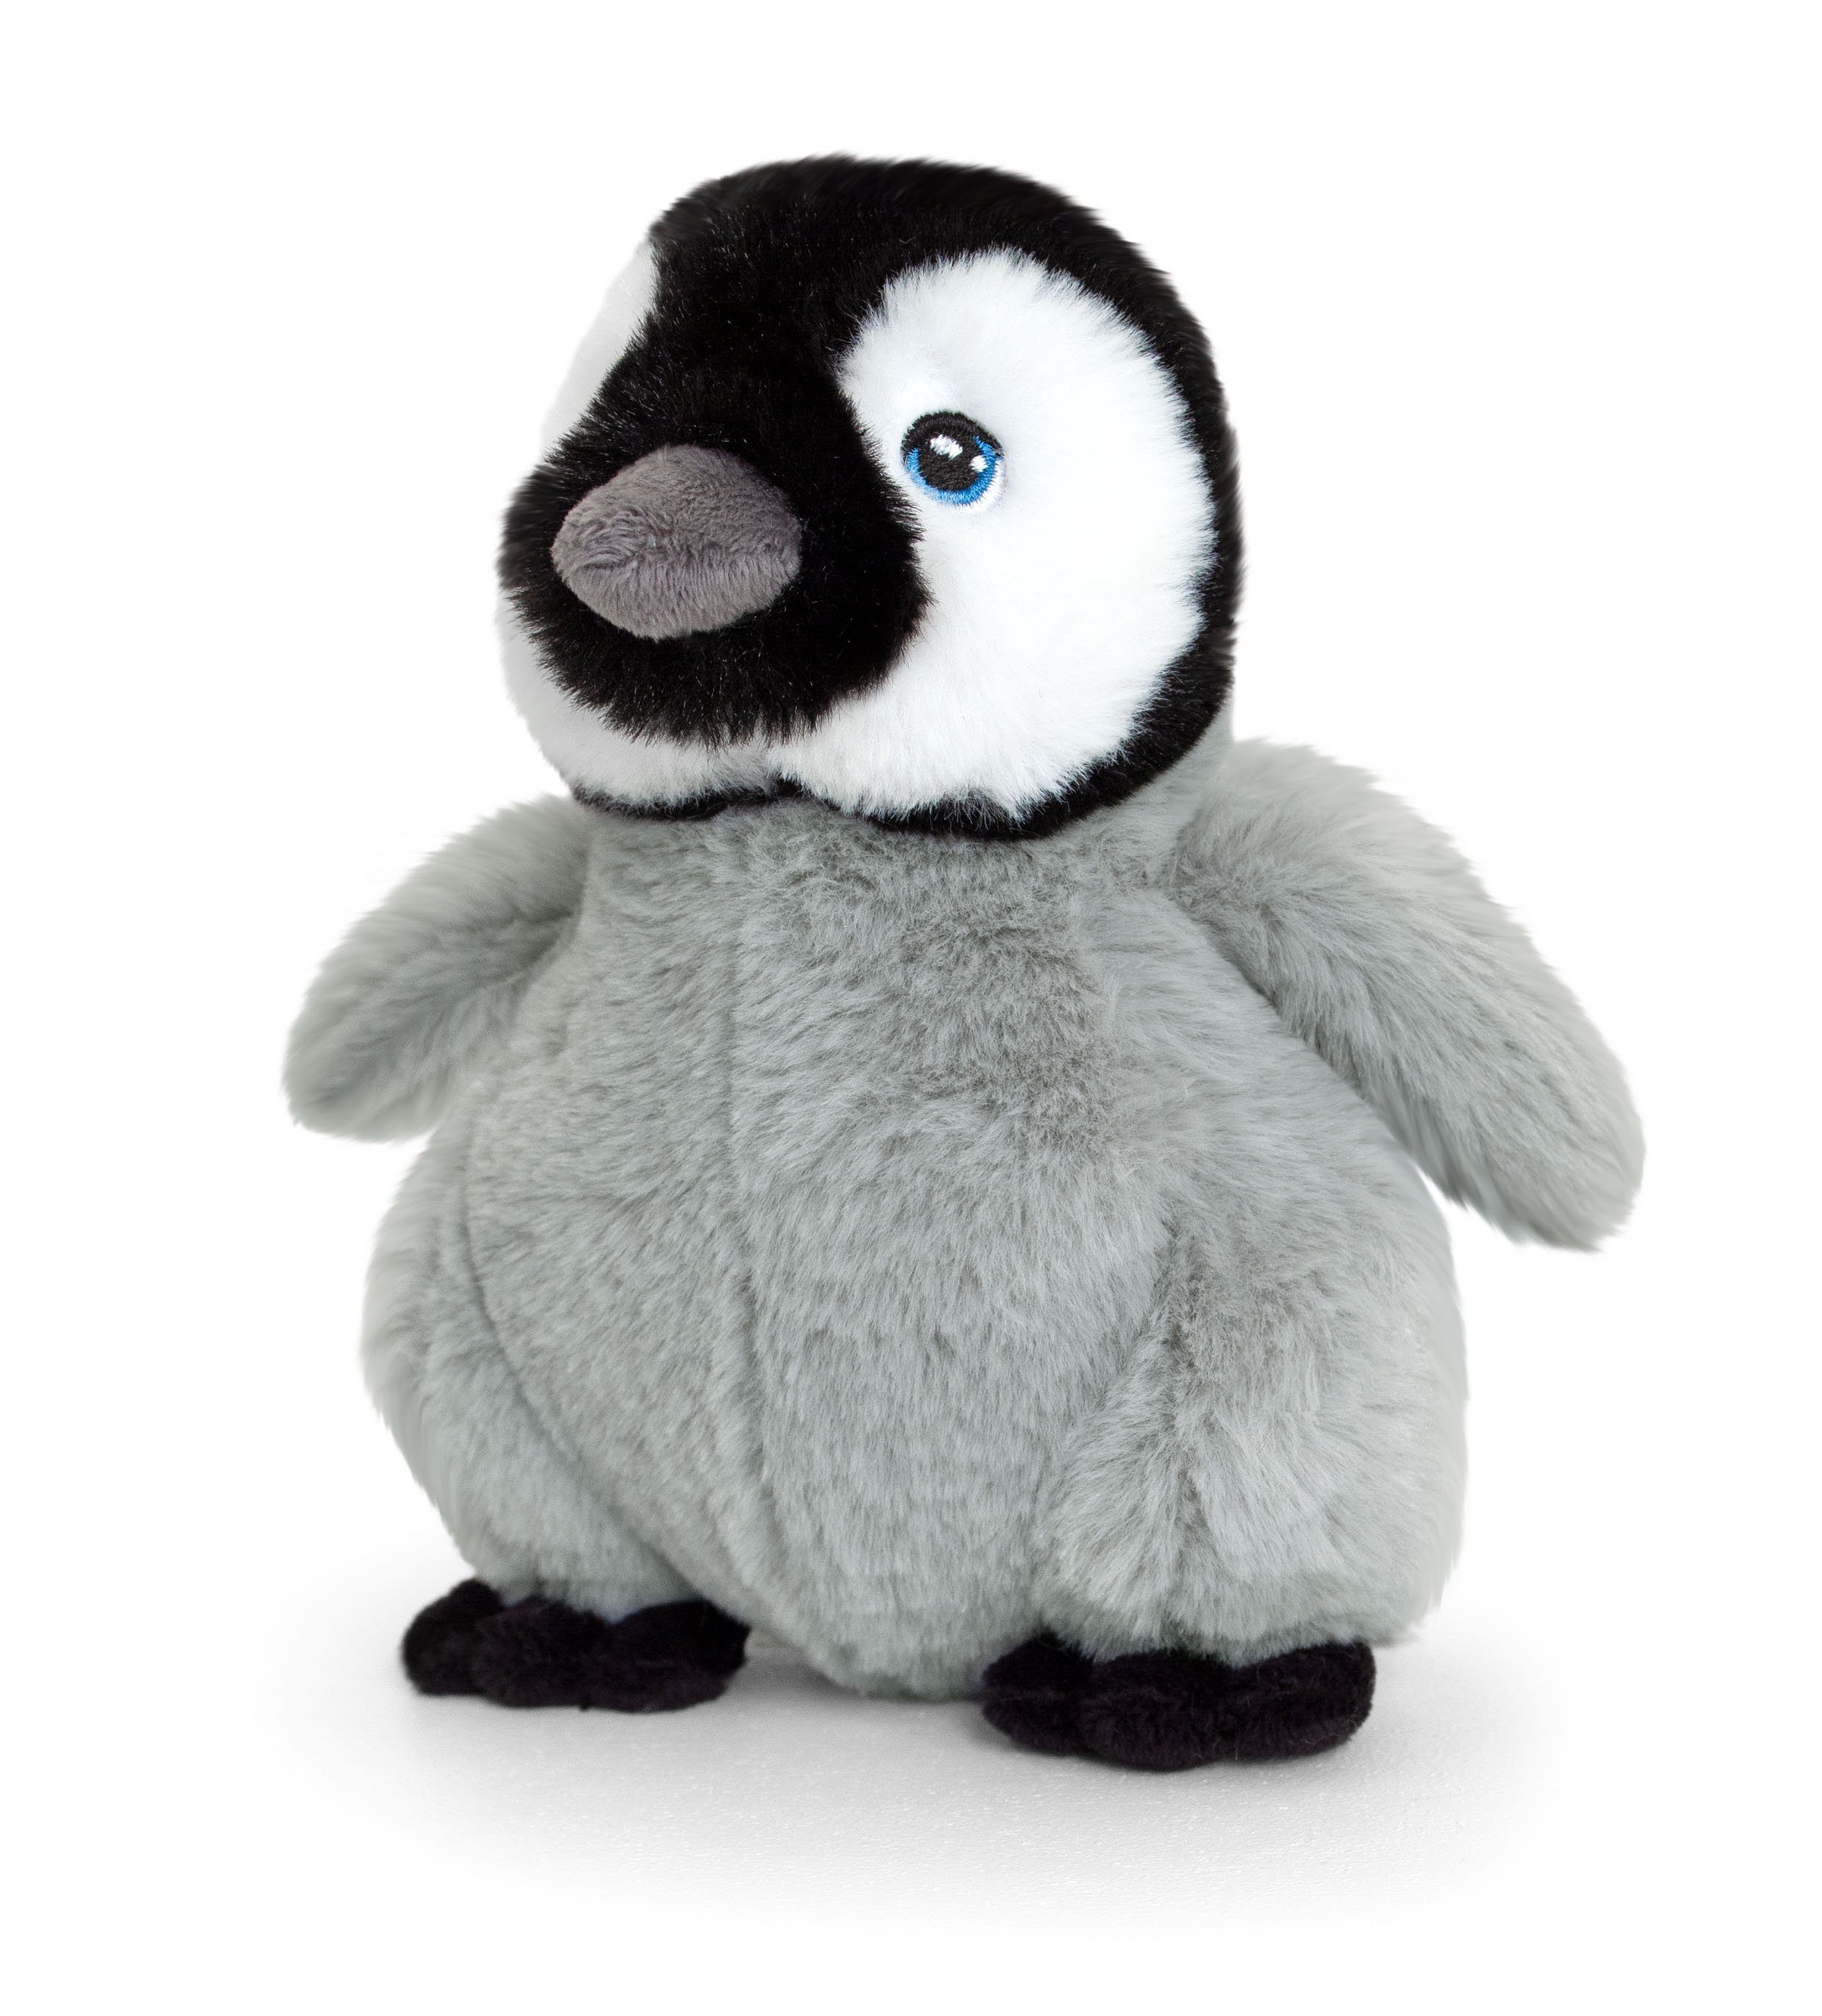 Keel Toys Kuscheltier Keeleco Pinguin Humboldt in verschiedenen Größen, Watte gefüllter Plüsch aus 100% recycelten Plastikflaschen